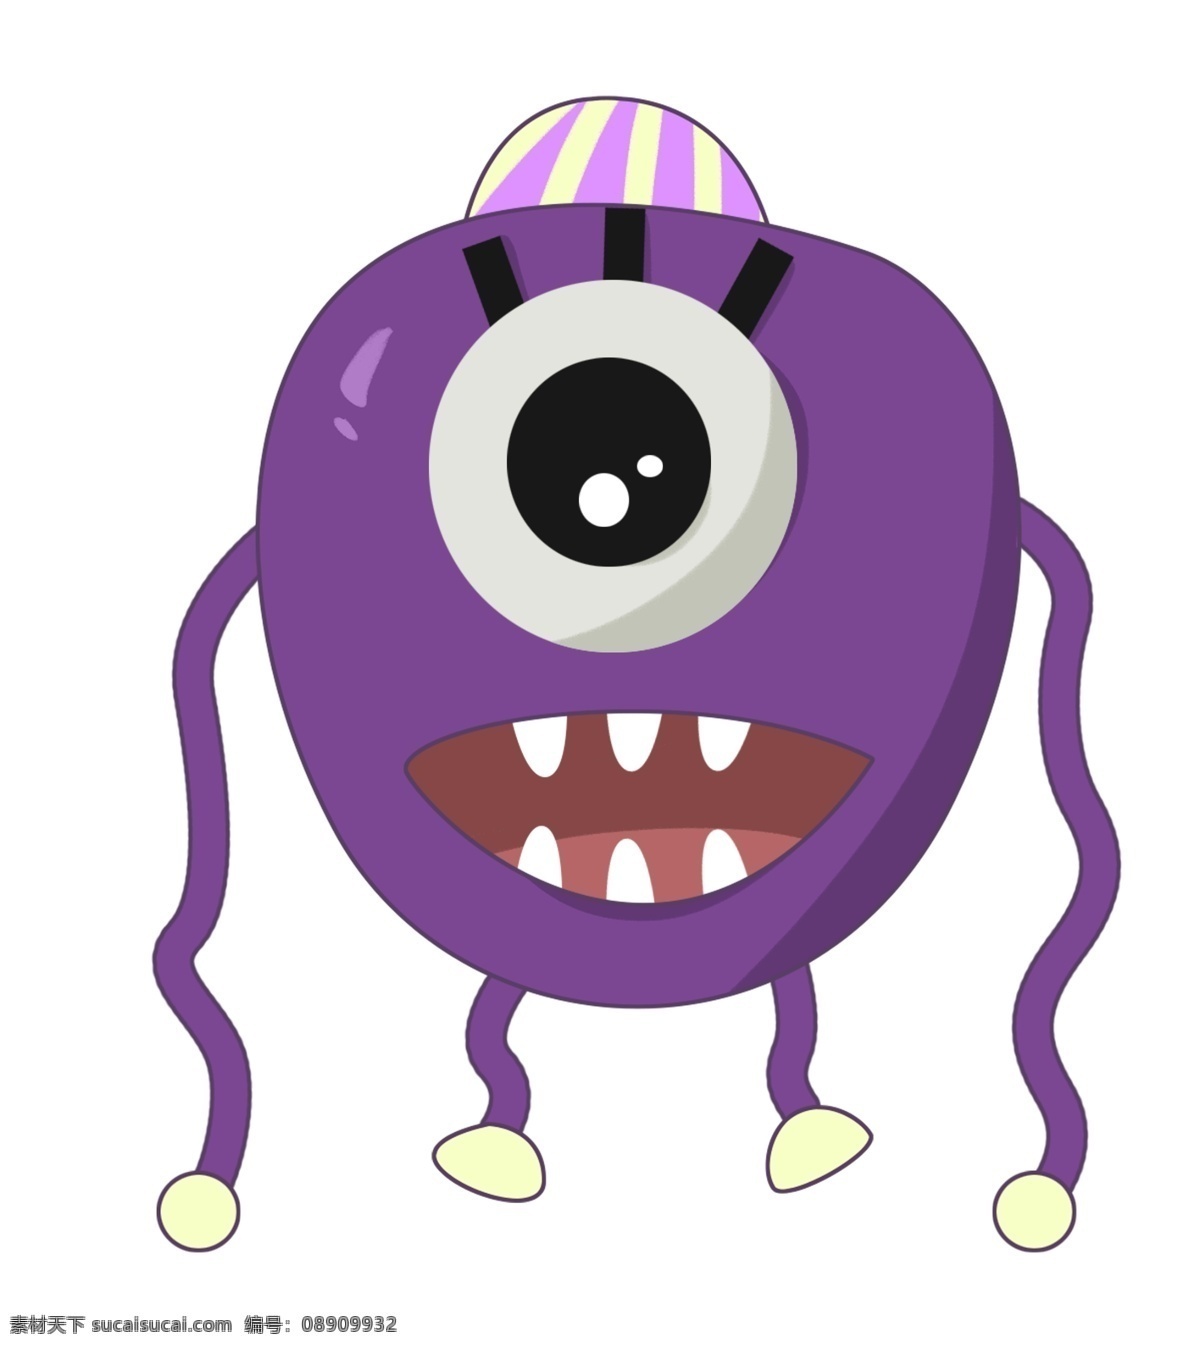 紫色 卡通 图案 细菌 插图 病毒细菌 灭菌病毒 牙齿细菌病毒 紫色细菌病毒 病菌卡通图 杀菌 消毒 灭菌 创意卡通